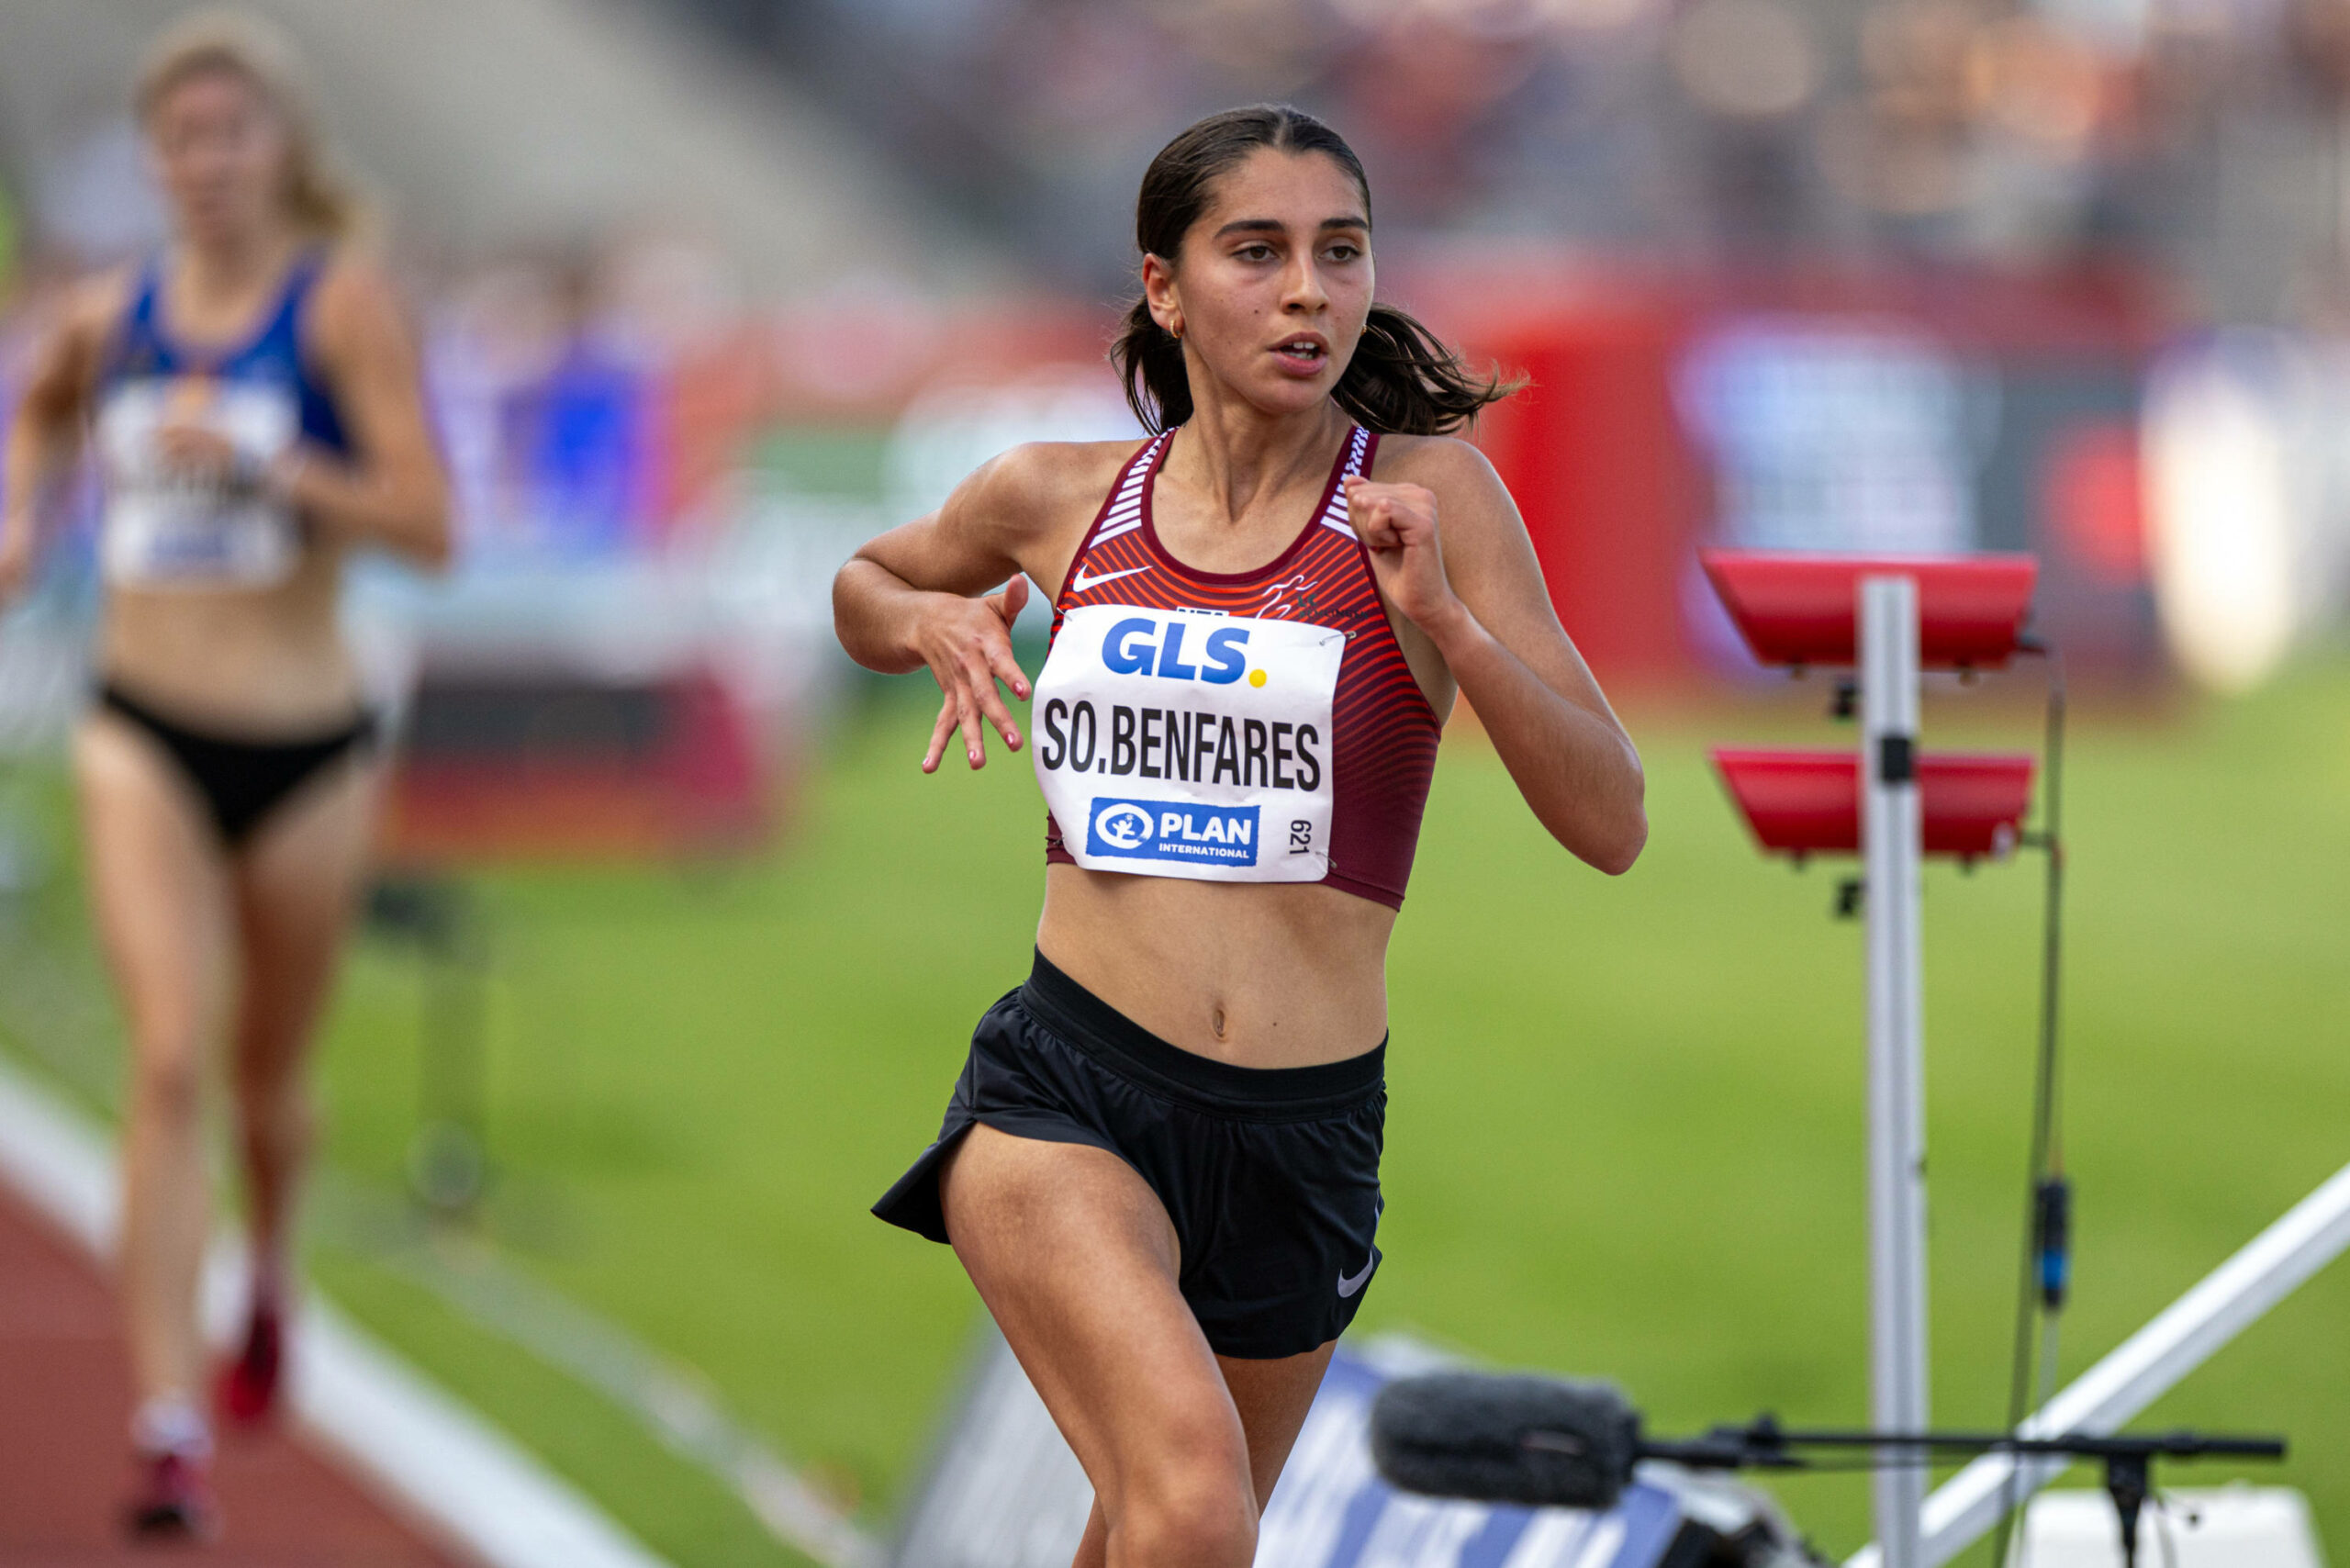 Sofia Benfares läuft ein Rennen.